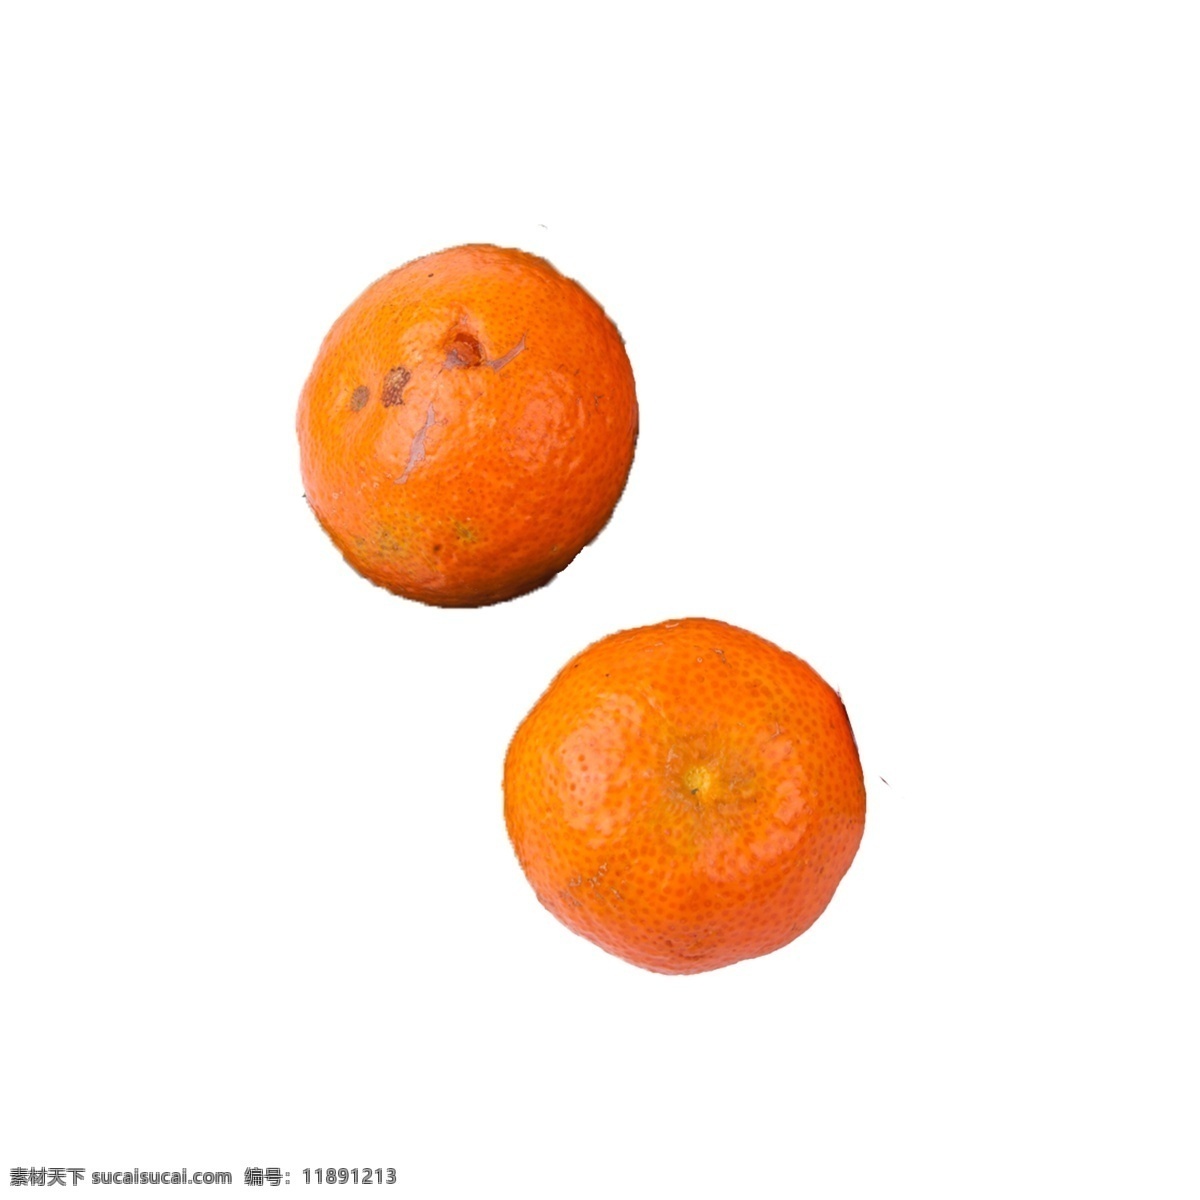 砂糖 橘 免 抠 橘子 新鲜 甜食 橘子免抠 摆拍 实物拍摄 新鲜的橘子 好吃的水果 水果 砂糖橘